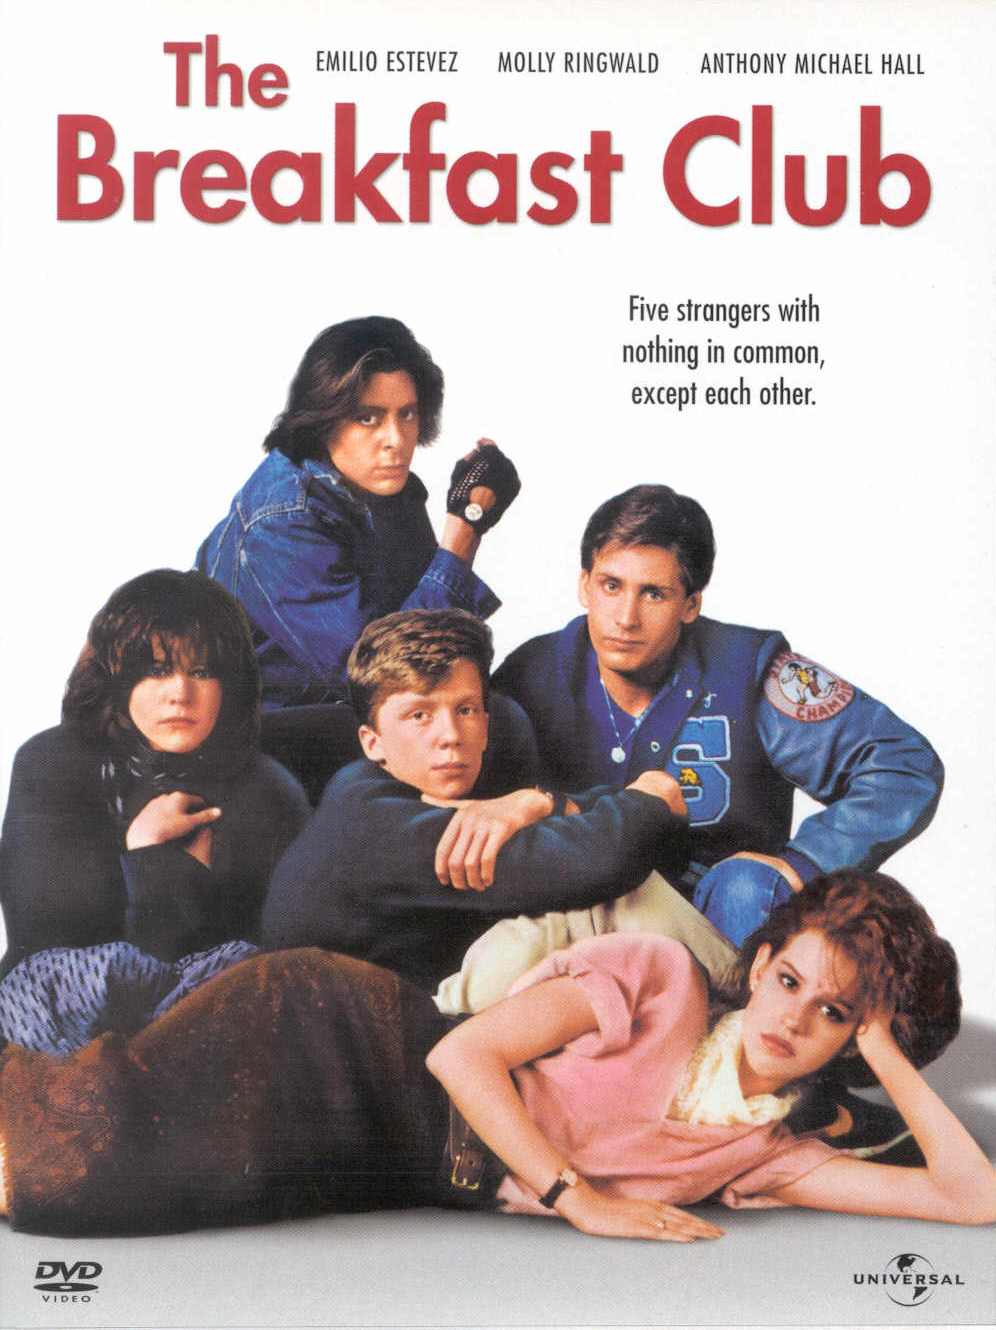 Breakfast Club Movie Quotes. QuotesGram